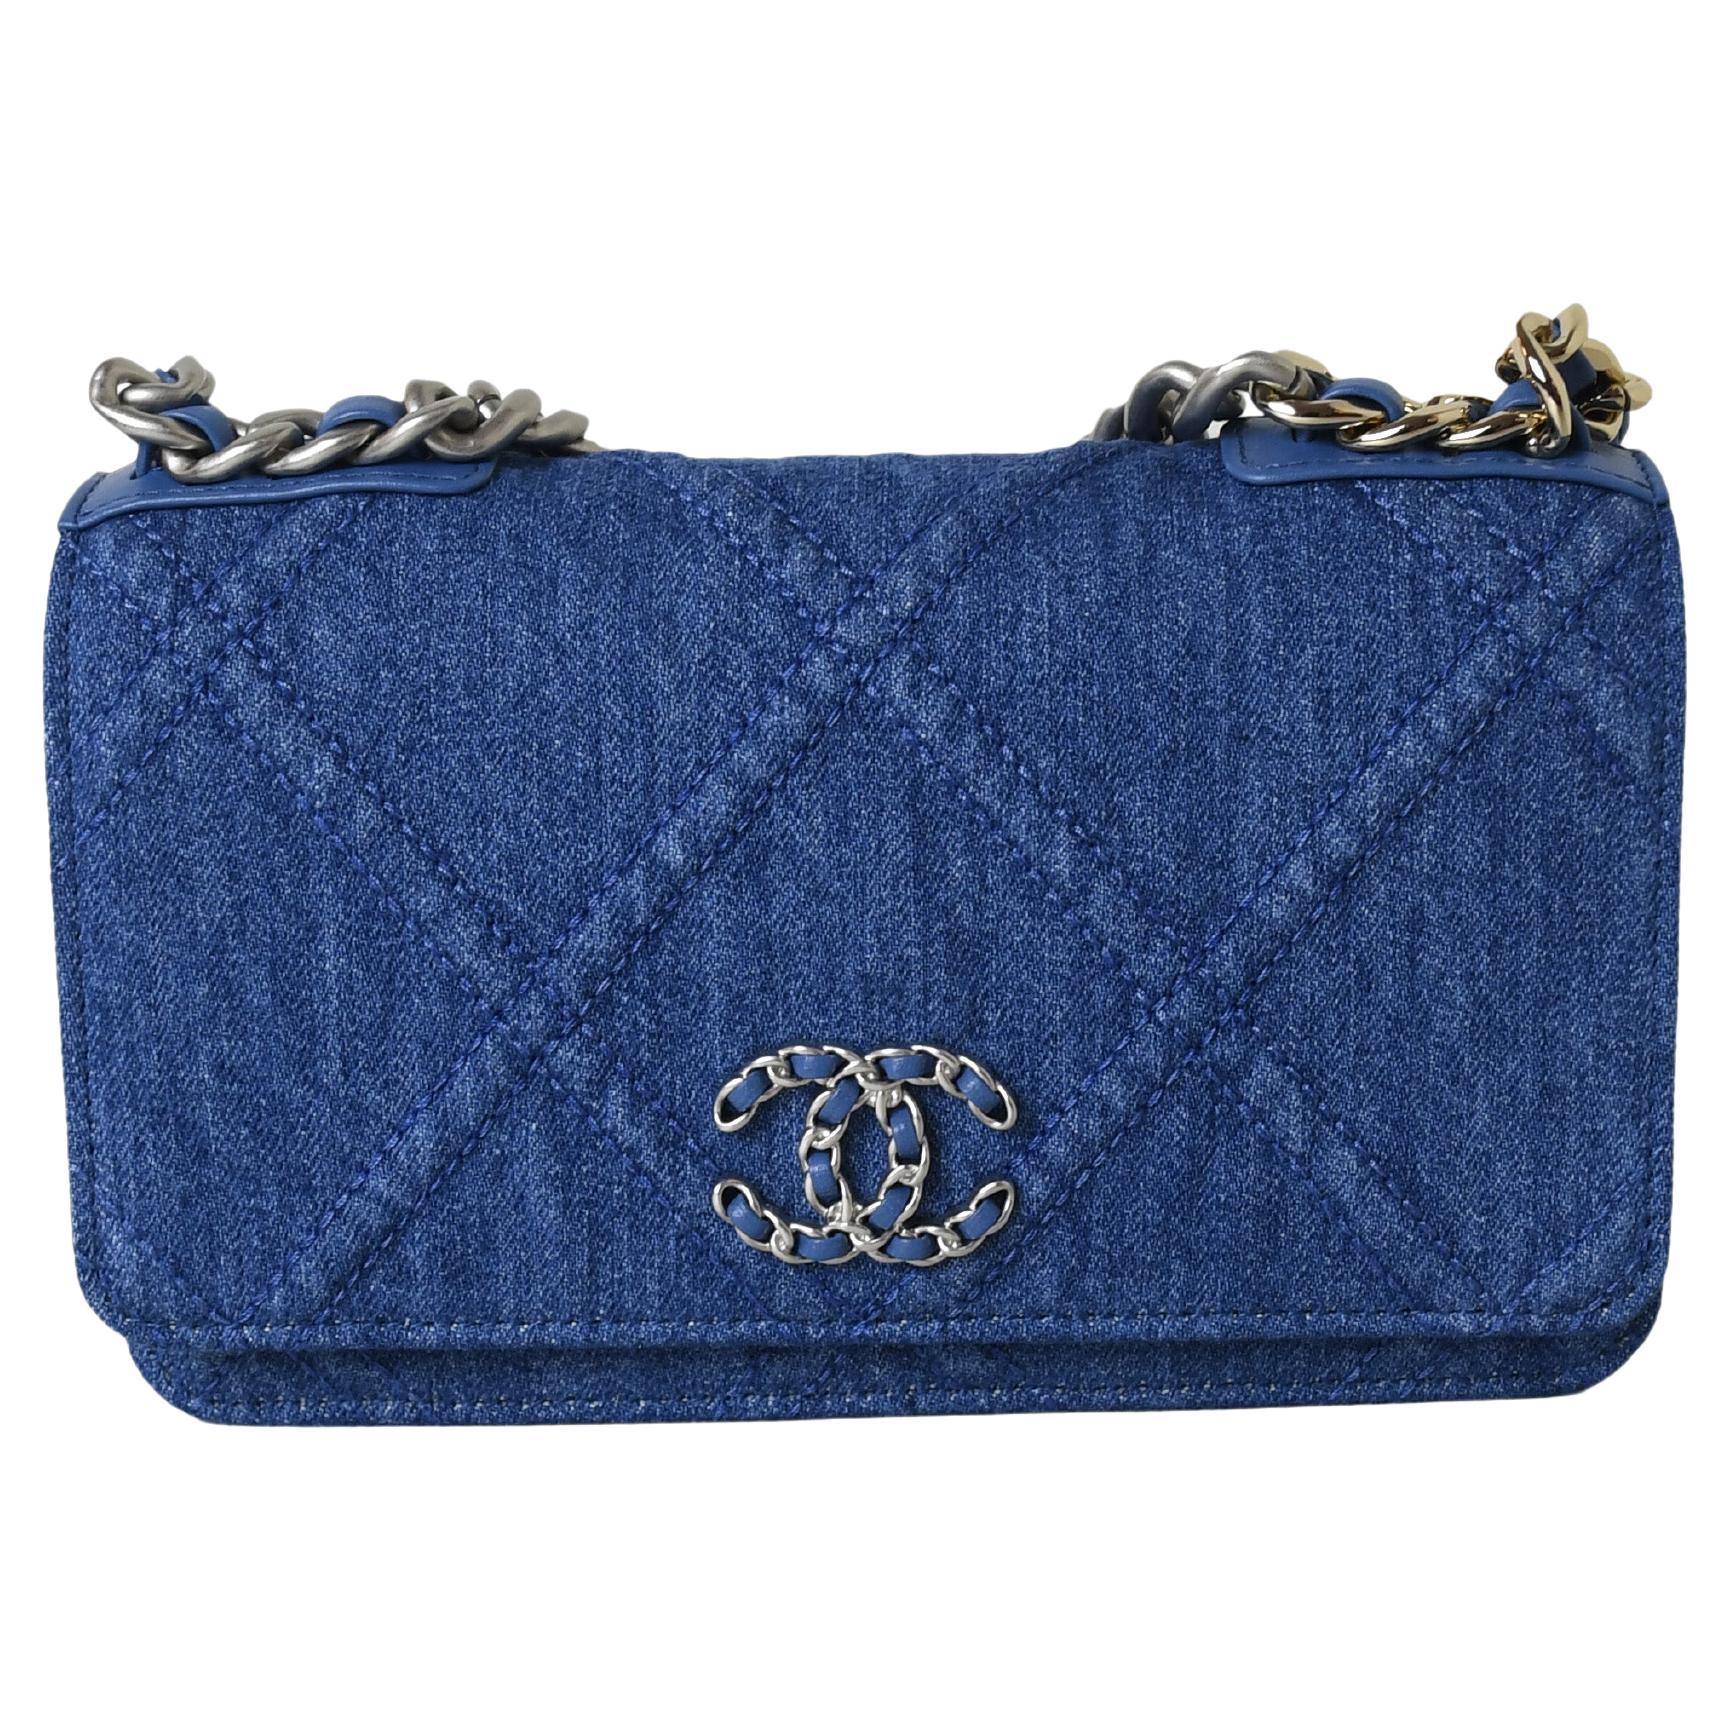 Chanel 22P Denim Small 19 Bag light blue Gold/Sliver Hardware